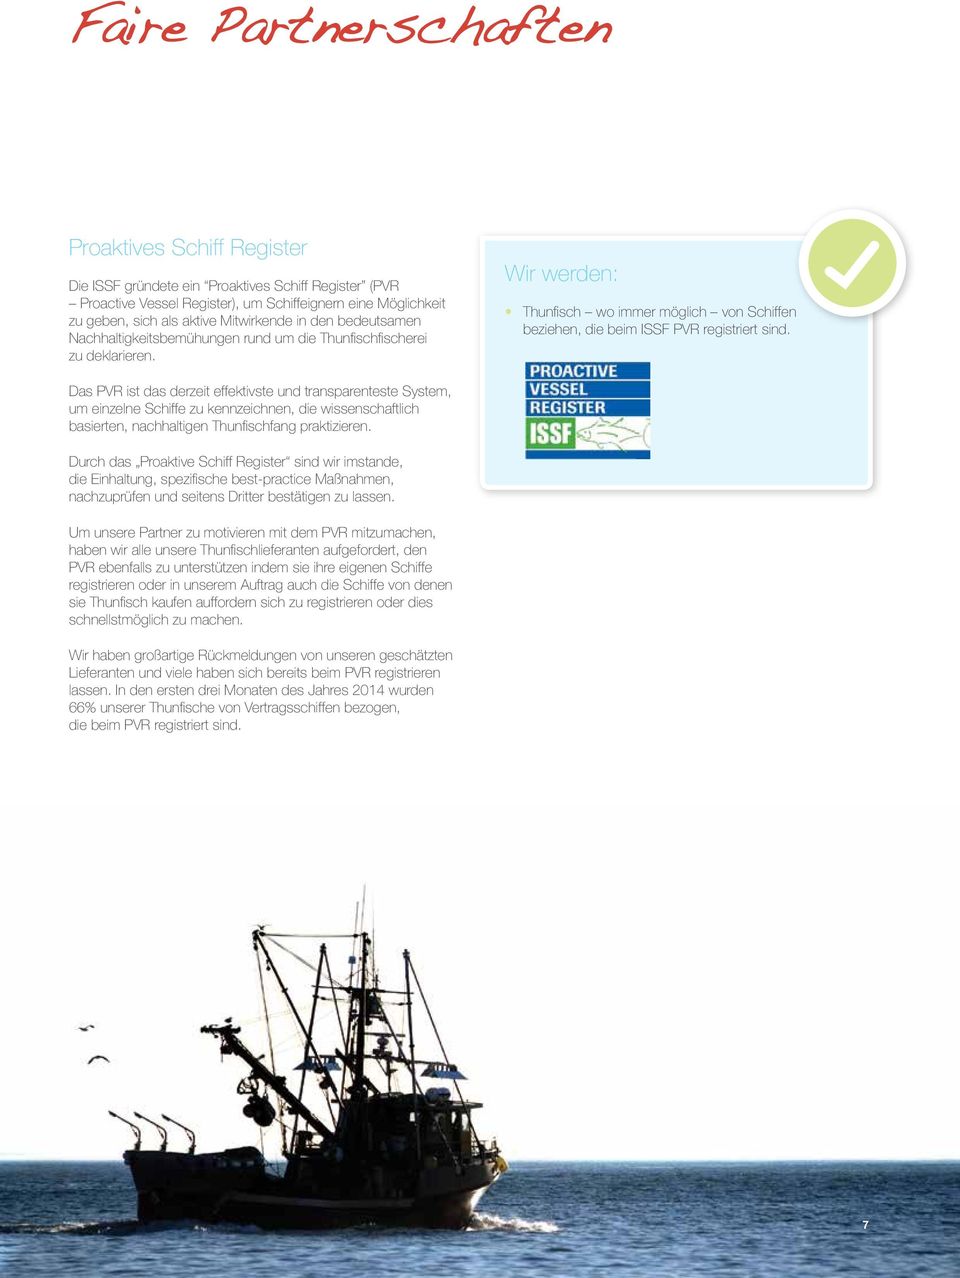 Wir werden: Thunfisch wo immer möglich von Schiffen beziehen, die beim ISSF PVR registriert sind.